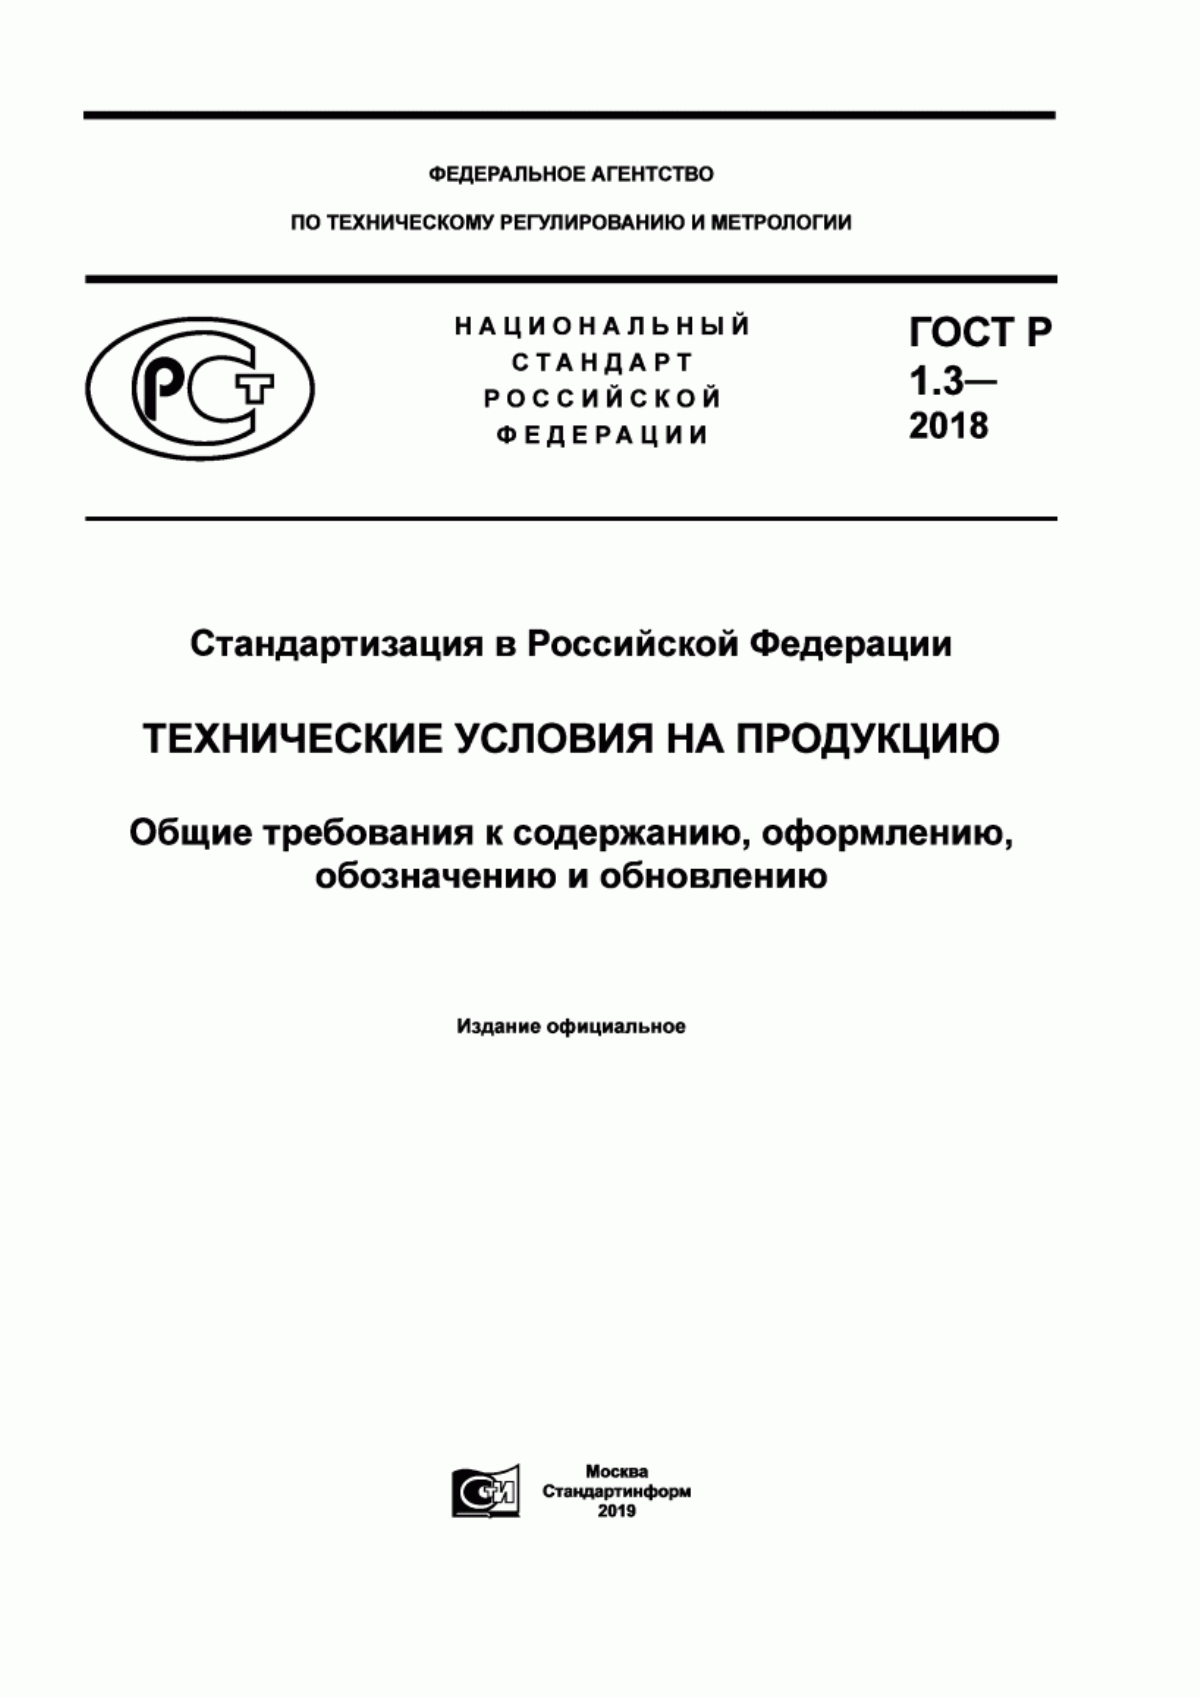 ГОСТ Р 1.3-2018 Стандартизация в Российской Федерации. Технические условия на продукцию. Общие требования к содержанию, оформлению, обозначению и обновлению